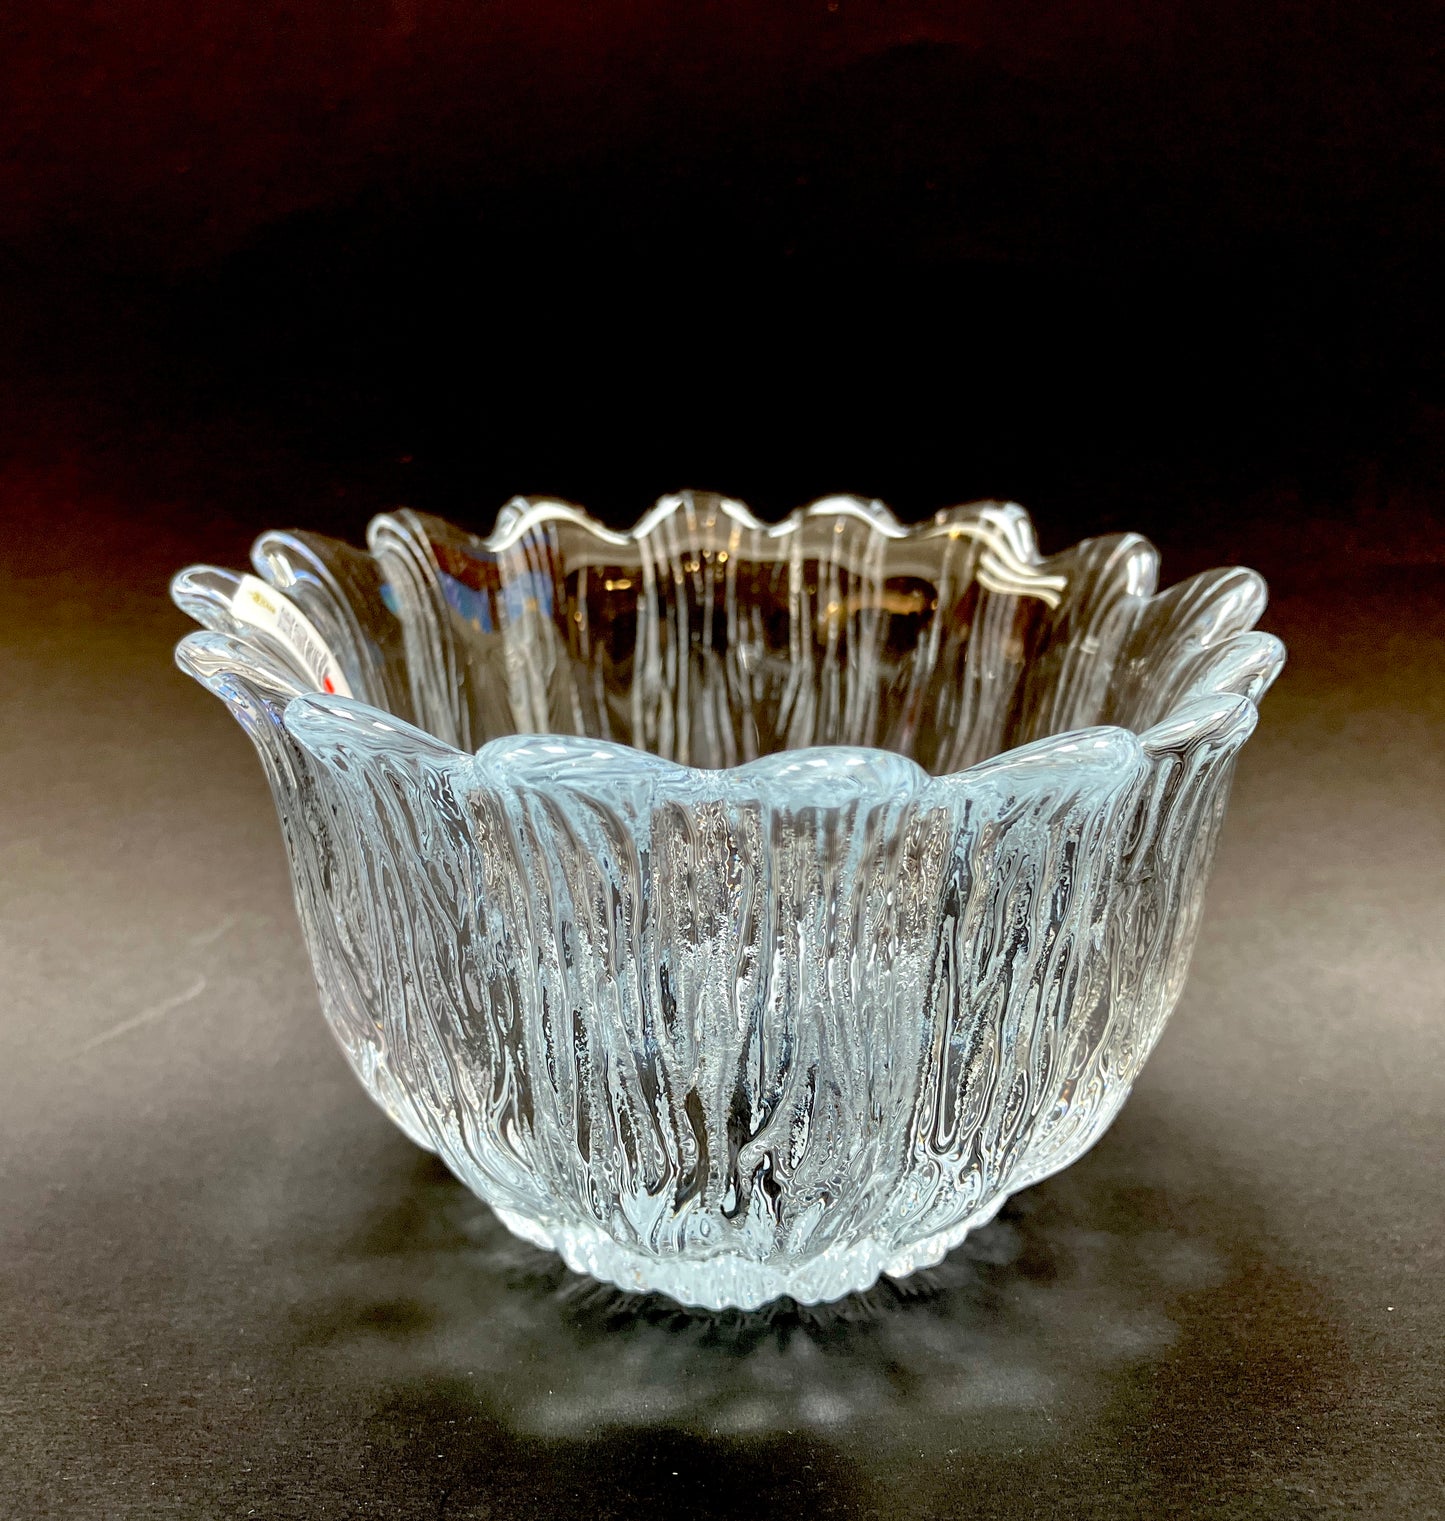 Holmegaard, Small Floral Shaped Bowl, Blossom Bowl, 285, Glass, Crystal, Copenhagen, Denmark, Sidse Werner